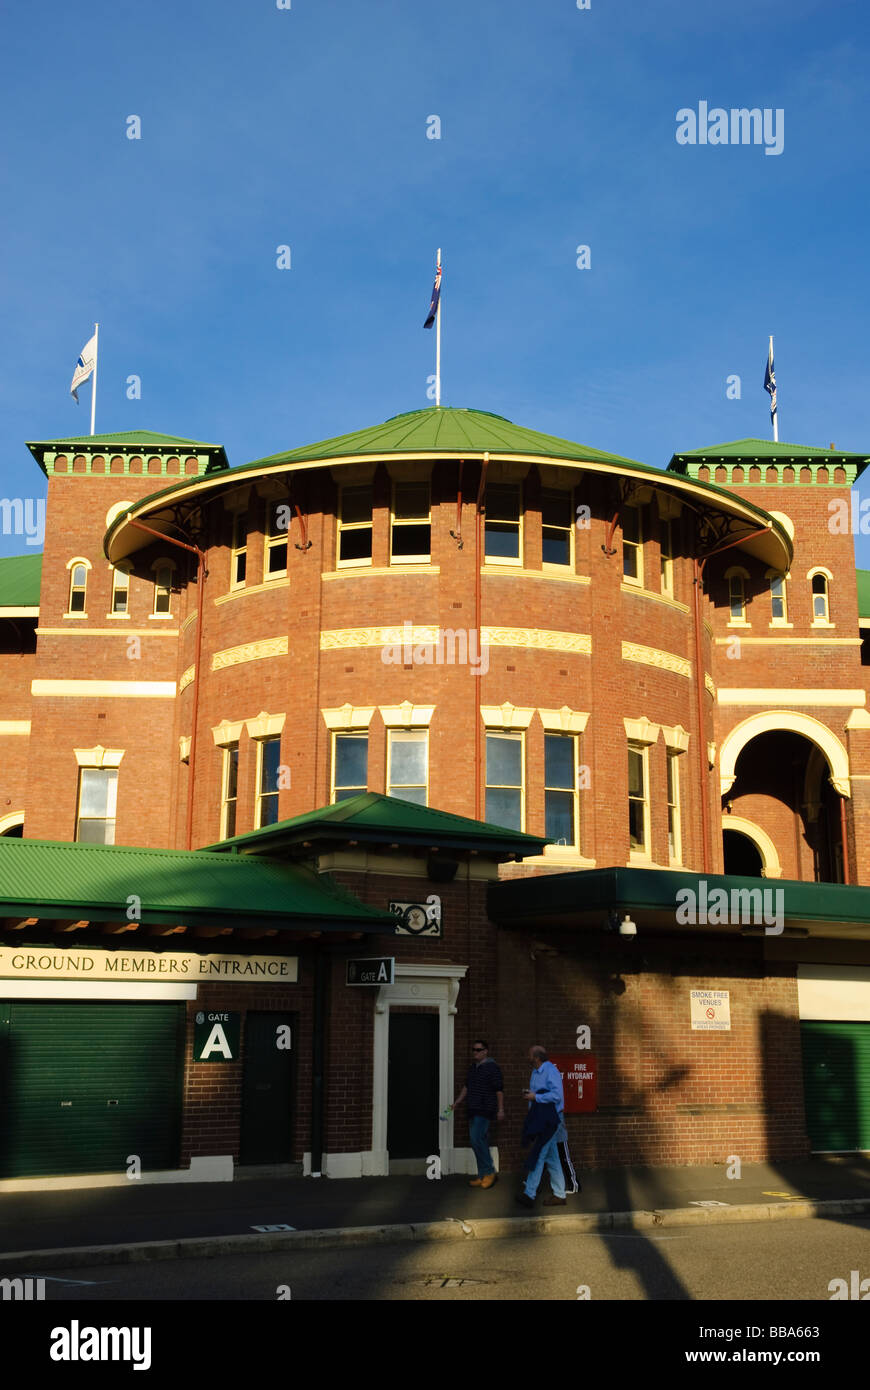 I membri' entrata di un grande stadio sportivo: la parte vecchia del SCG (Sydney Cricket Ground), Australia Foto Stock